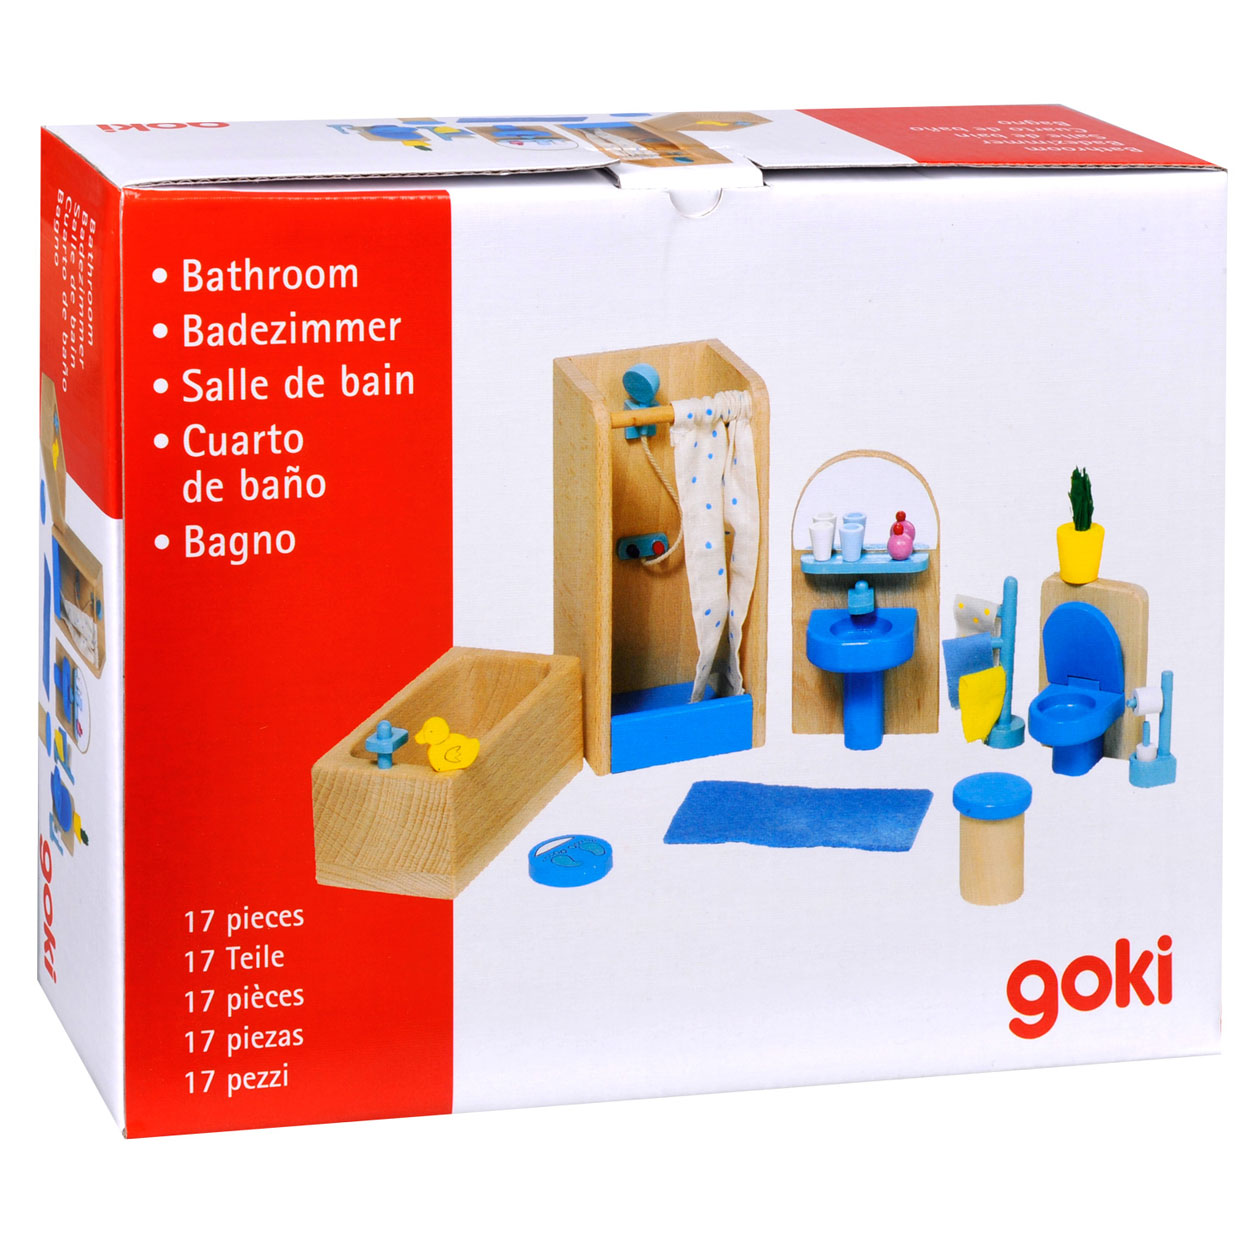 Goki Puppenhausmöbel Badezimmer